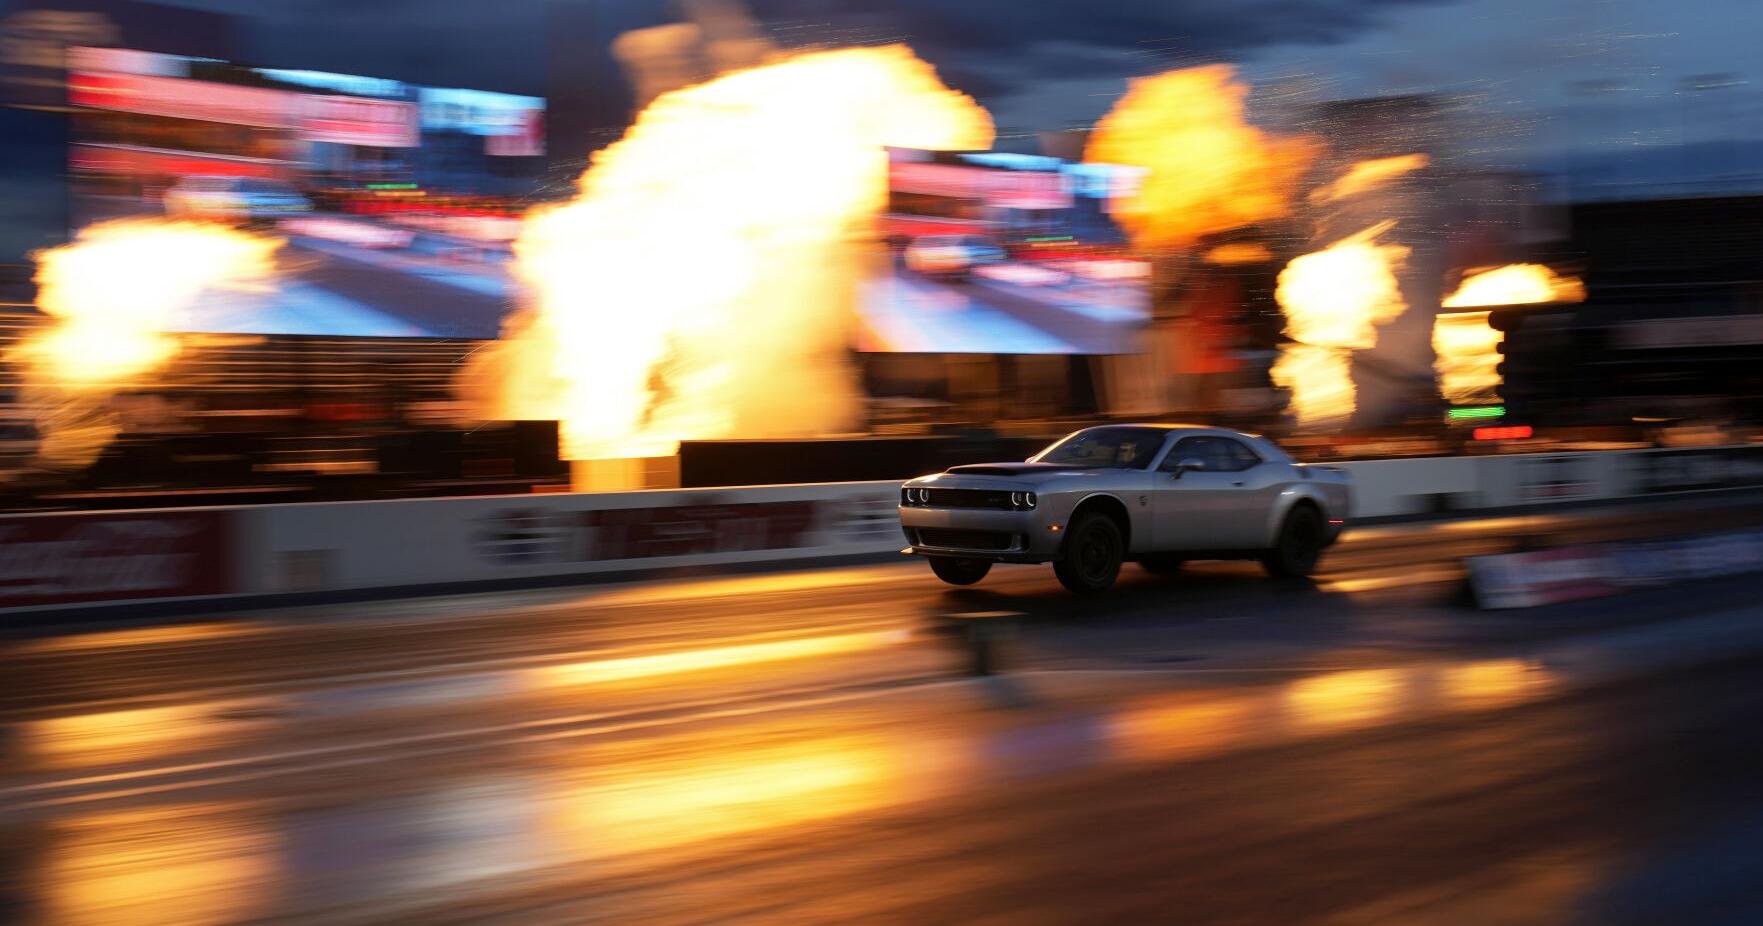 PHOTOS: Dodge unveils last super-fast gasoline muscle car